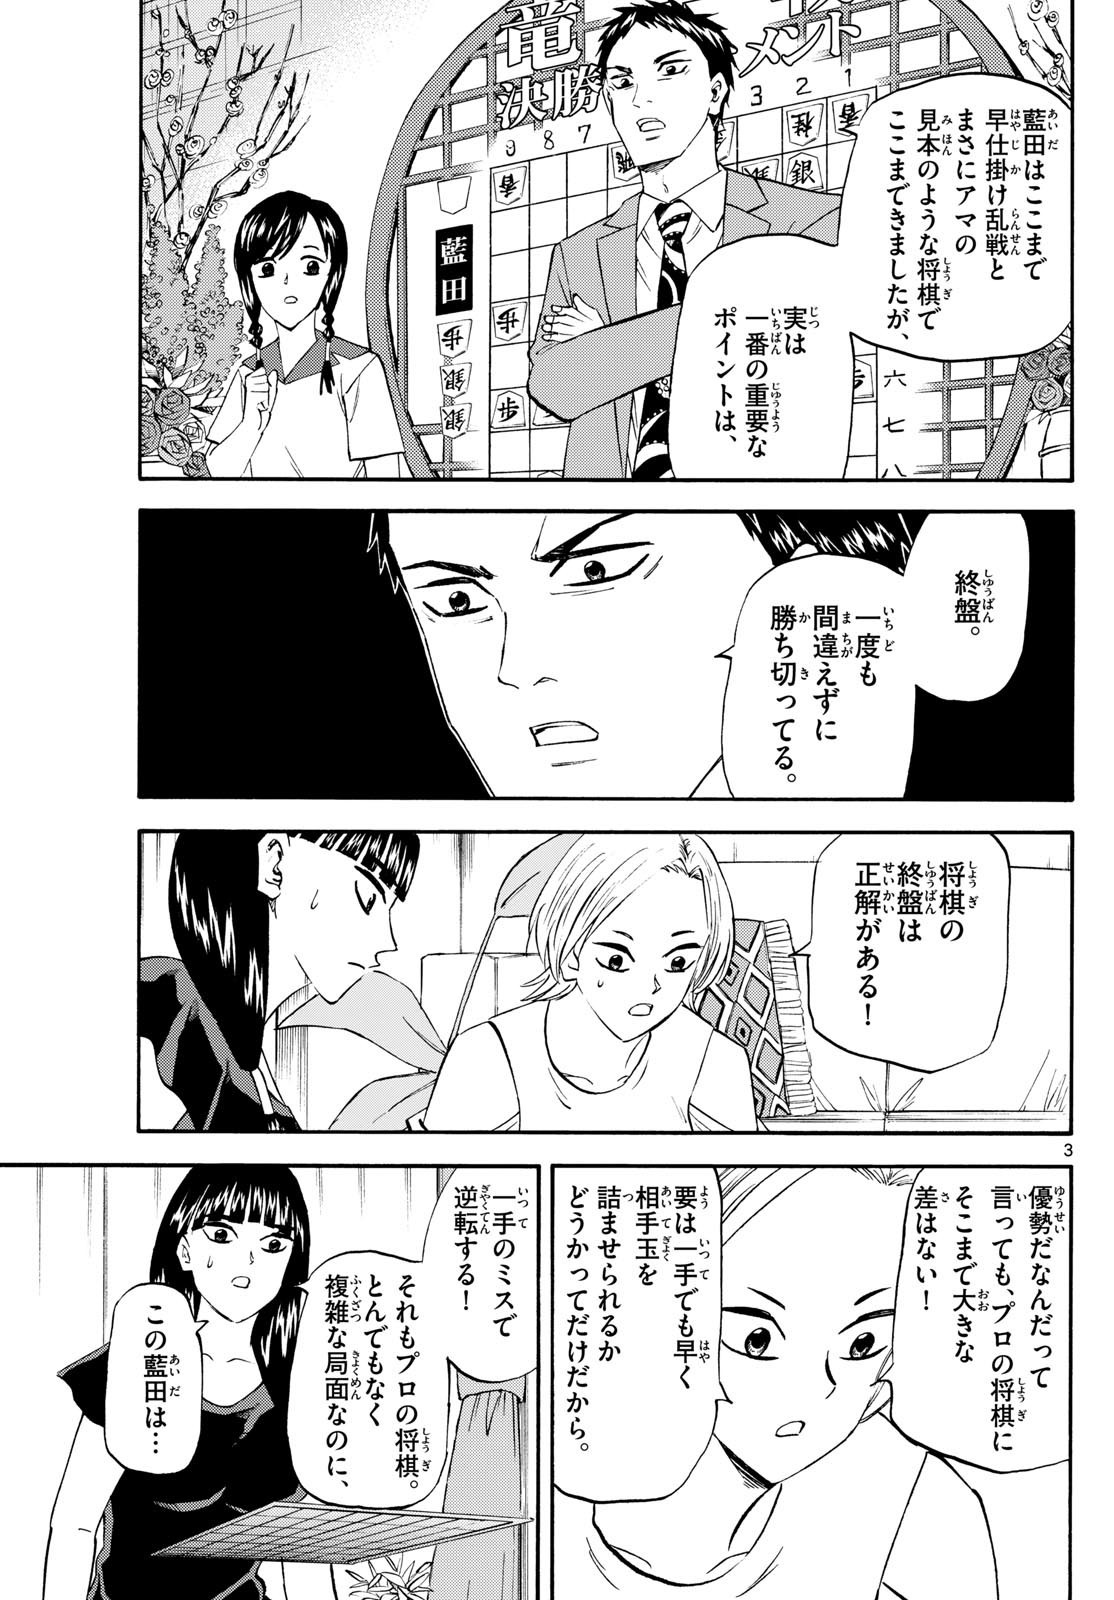 Ryu-to-Ichigo - Chapter 201 - Page 3